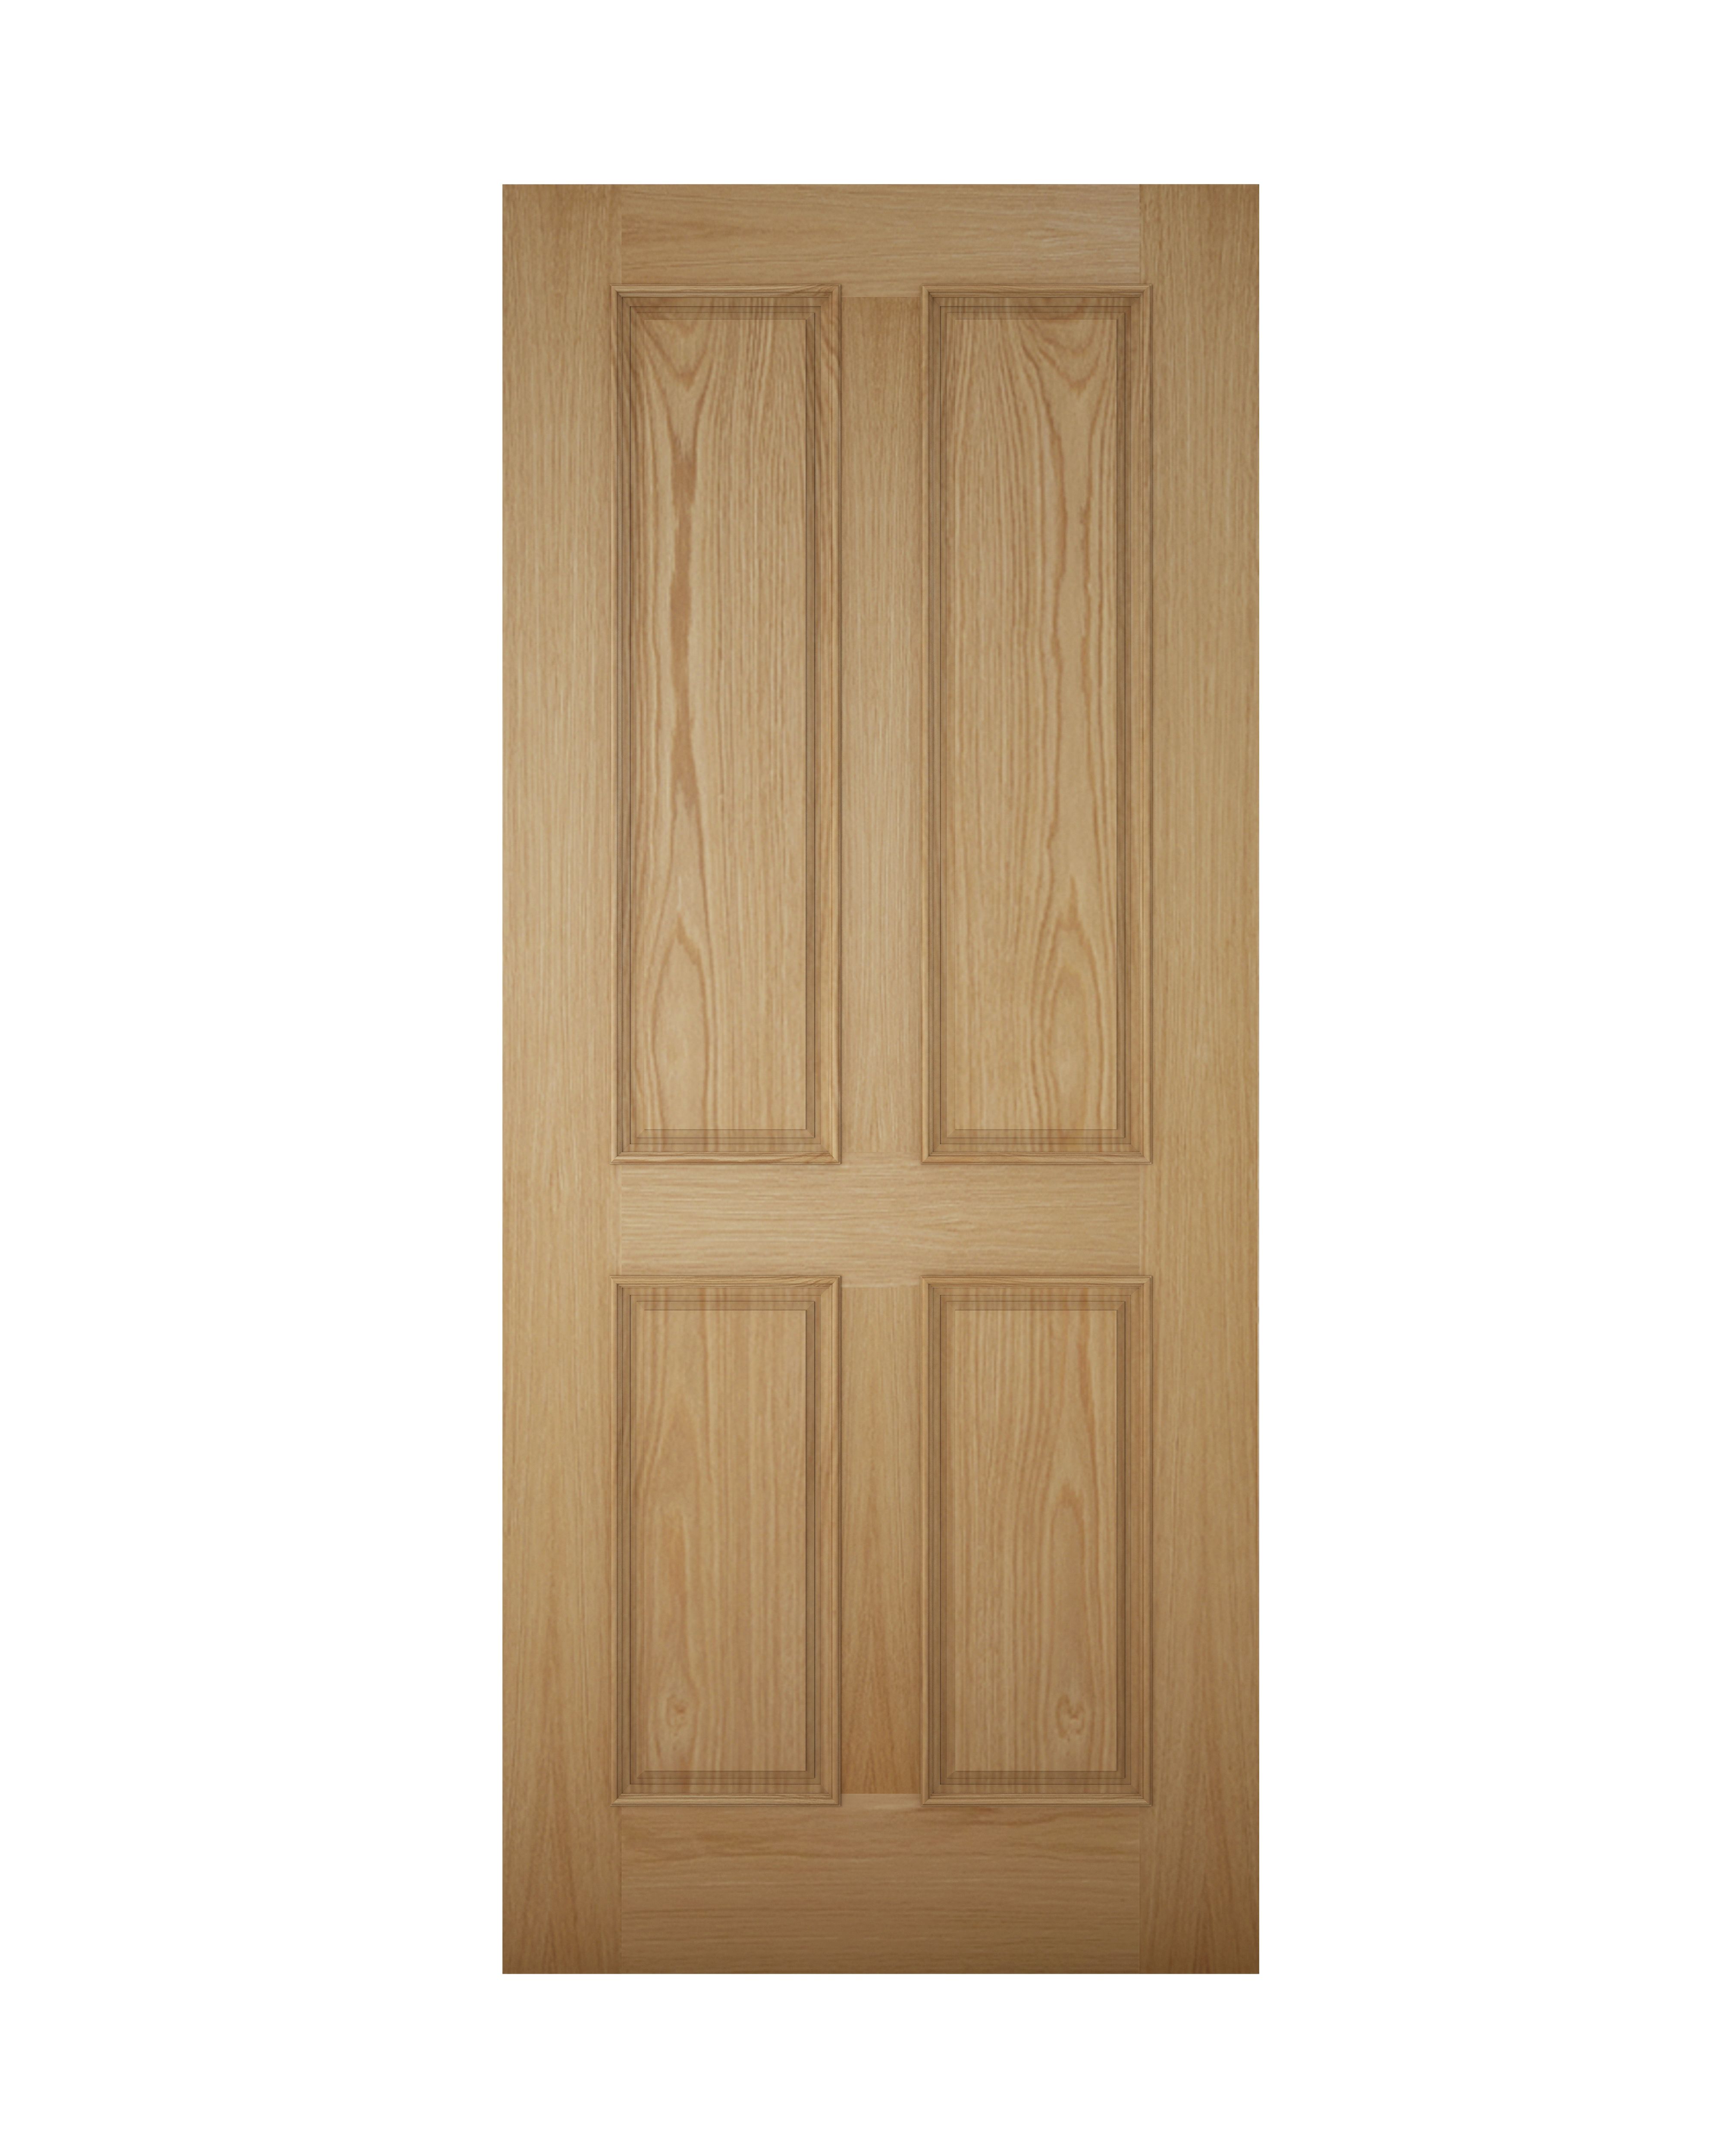 4 panel Unglazed Wooden White oak veneer External Front door, (H)1981mm (W)762mm